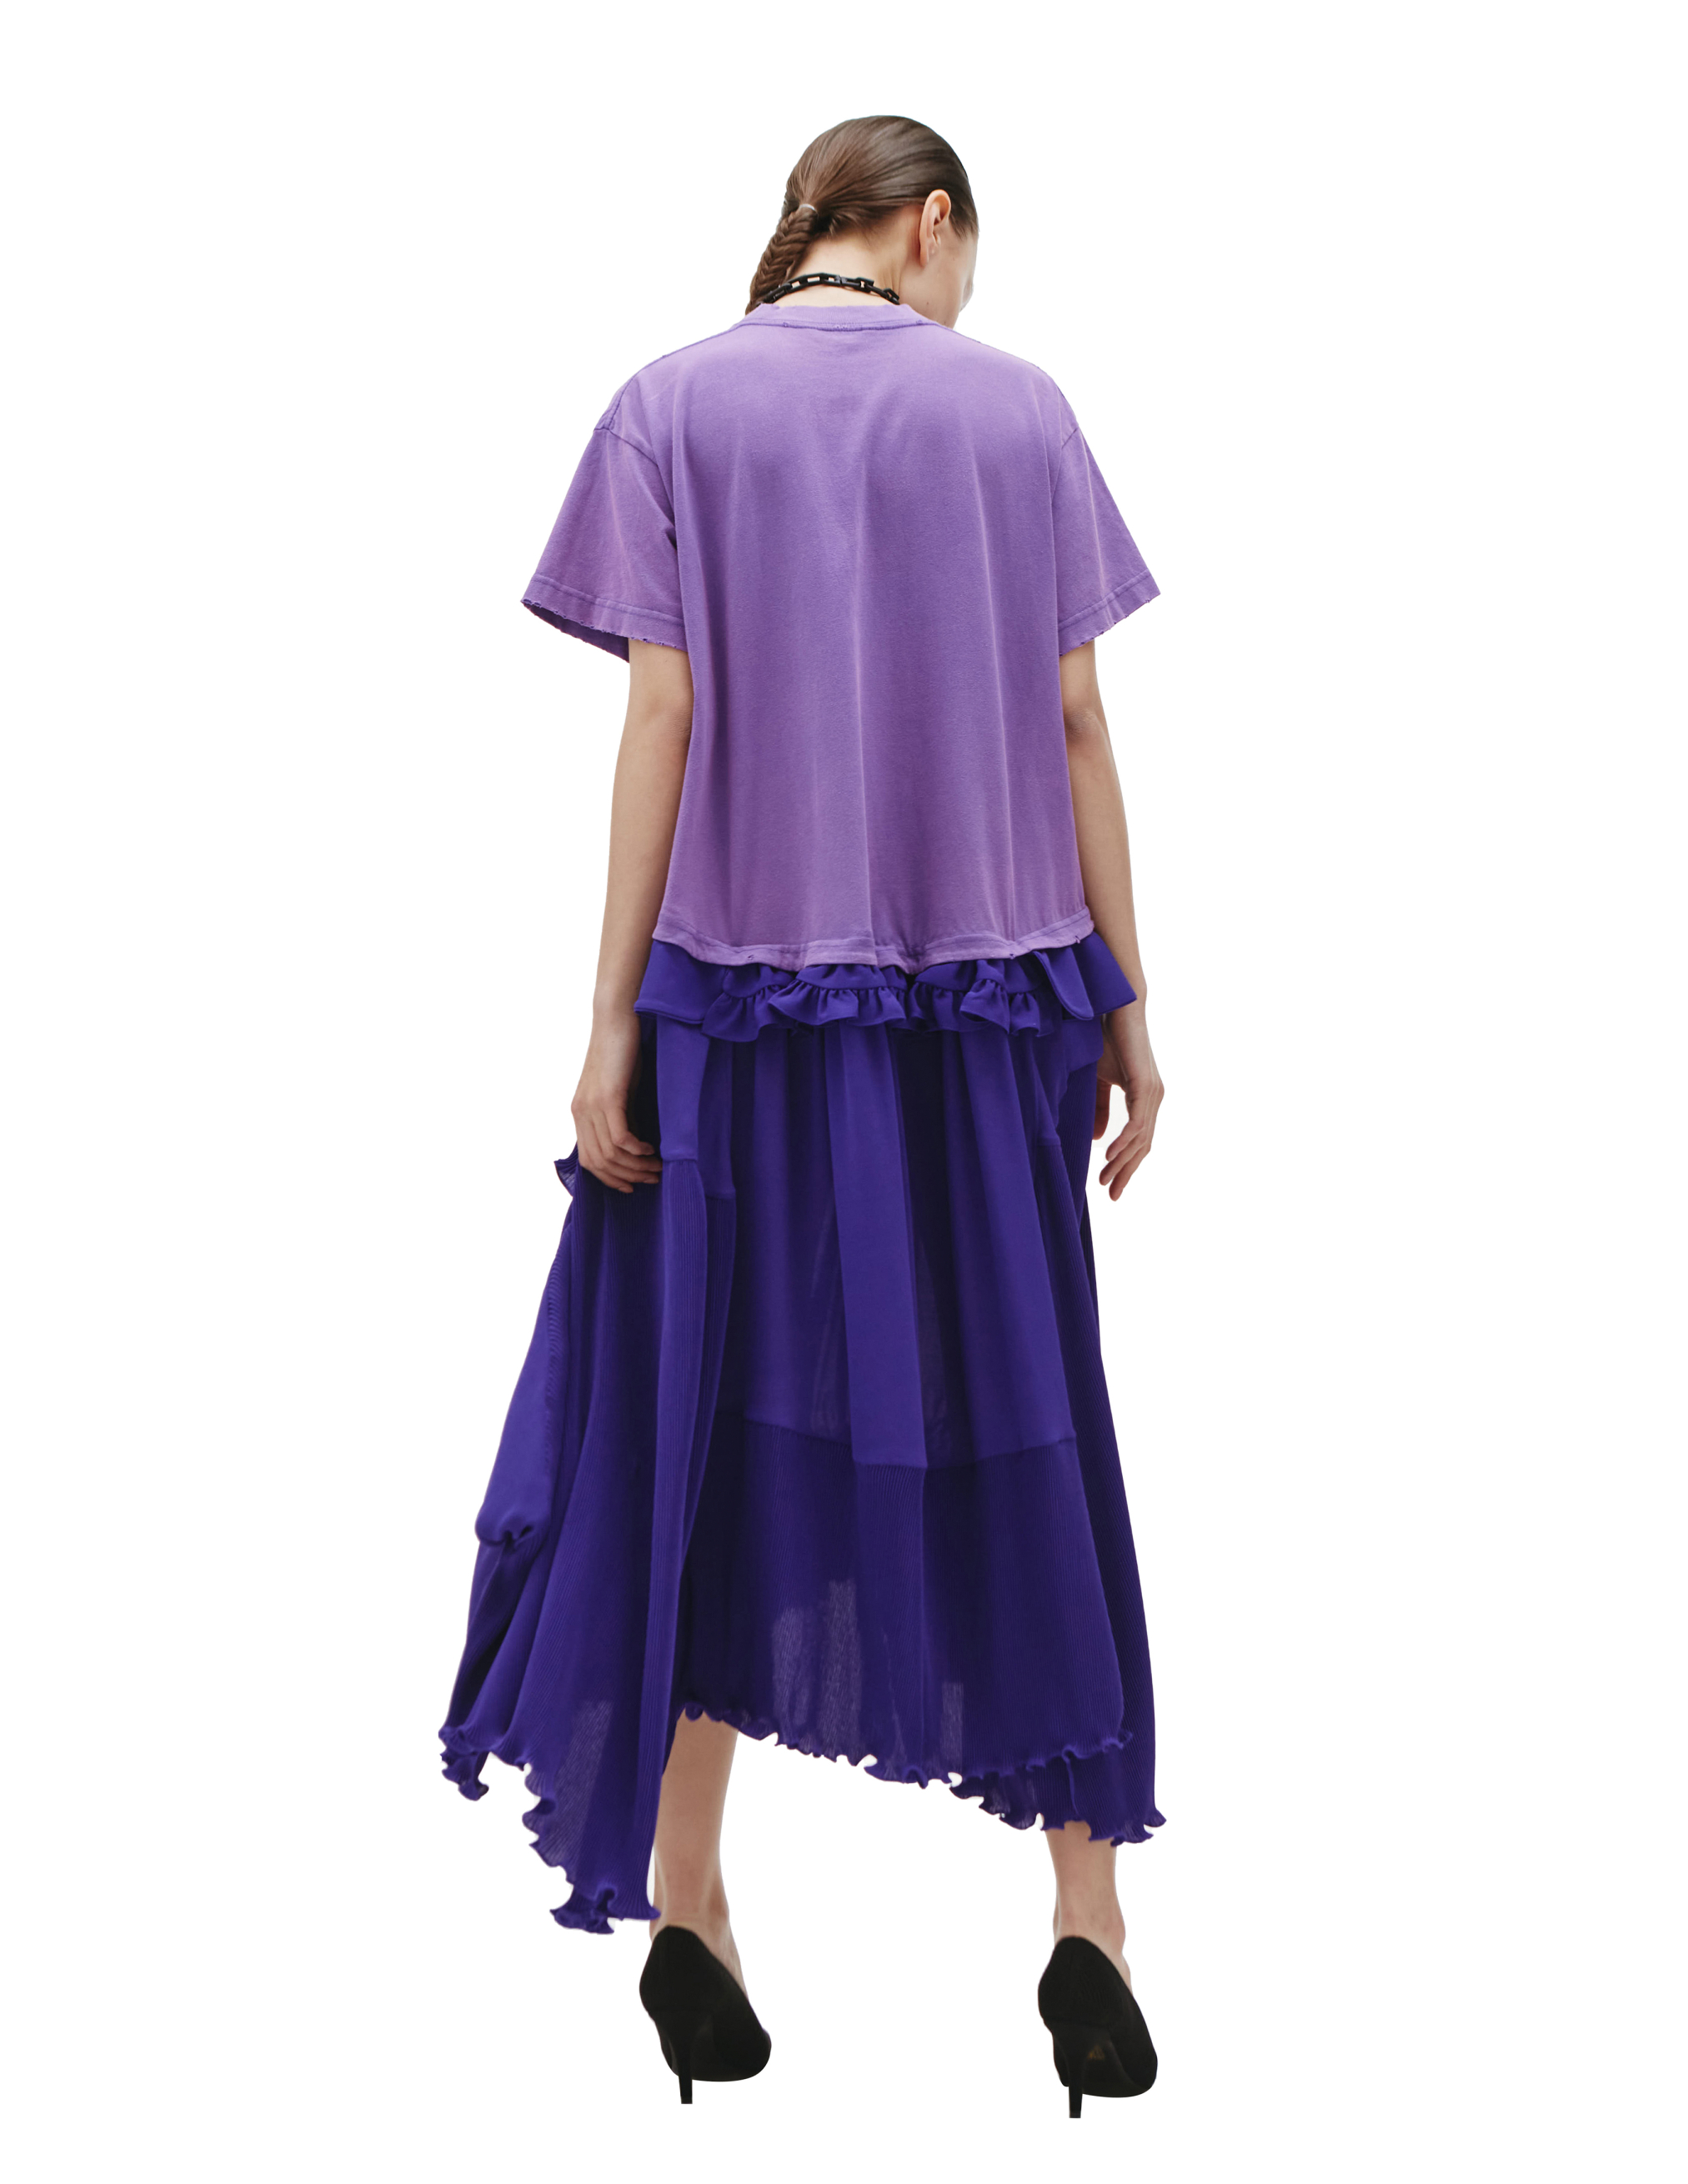 Комбинированное платье с логотипом Balenciaga 680804/TLO32/4021, размер 42;40;38 680804/TLO32/4021 - фото 3